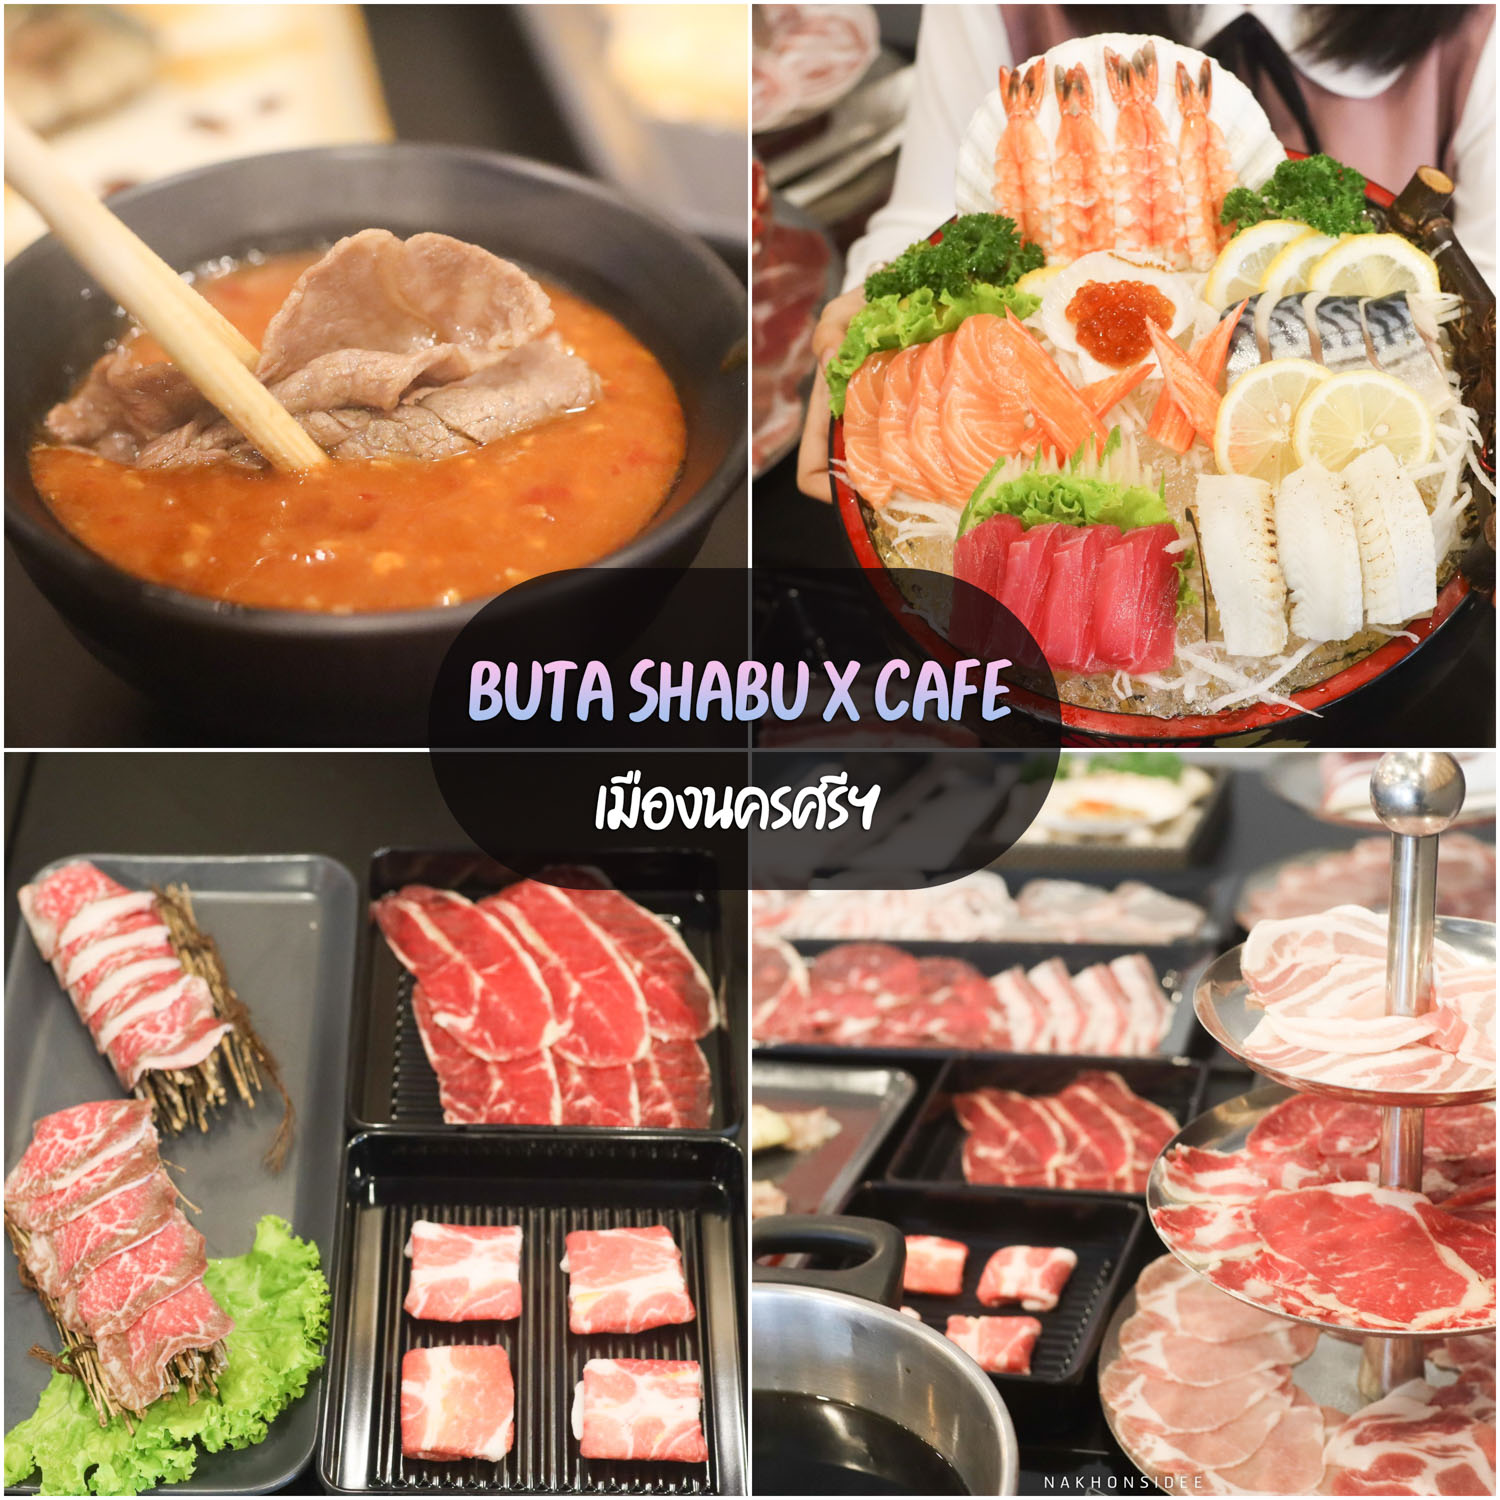 Buta-Shabu-X-Cafe -นครศรีธรรมราช-บุฟเฟ่ต์ชาบู-อาหารญี่ปุ่น-พร้อมของหวานแบบจัดเต็ม-วัตถุดิบดี-น้ำจิ้มอร่อยมวากกก-บอกเลยต้องห้ามพลาด
 ที่เที่ยวนครศรีธรรมราช,2022,2565